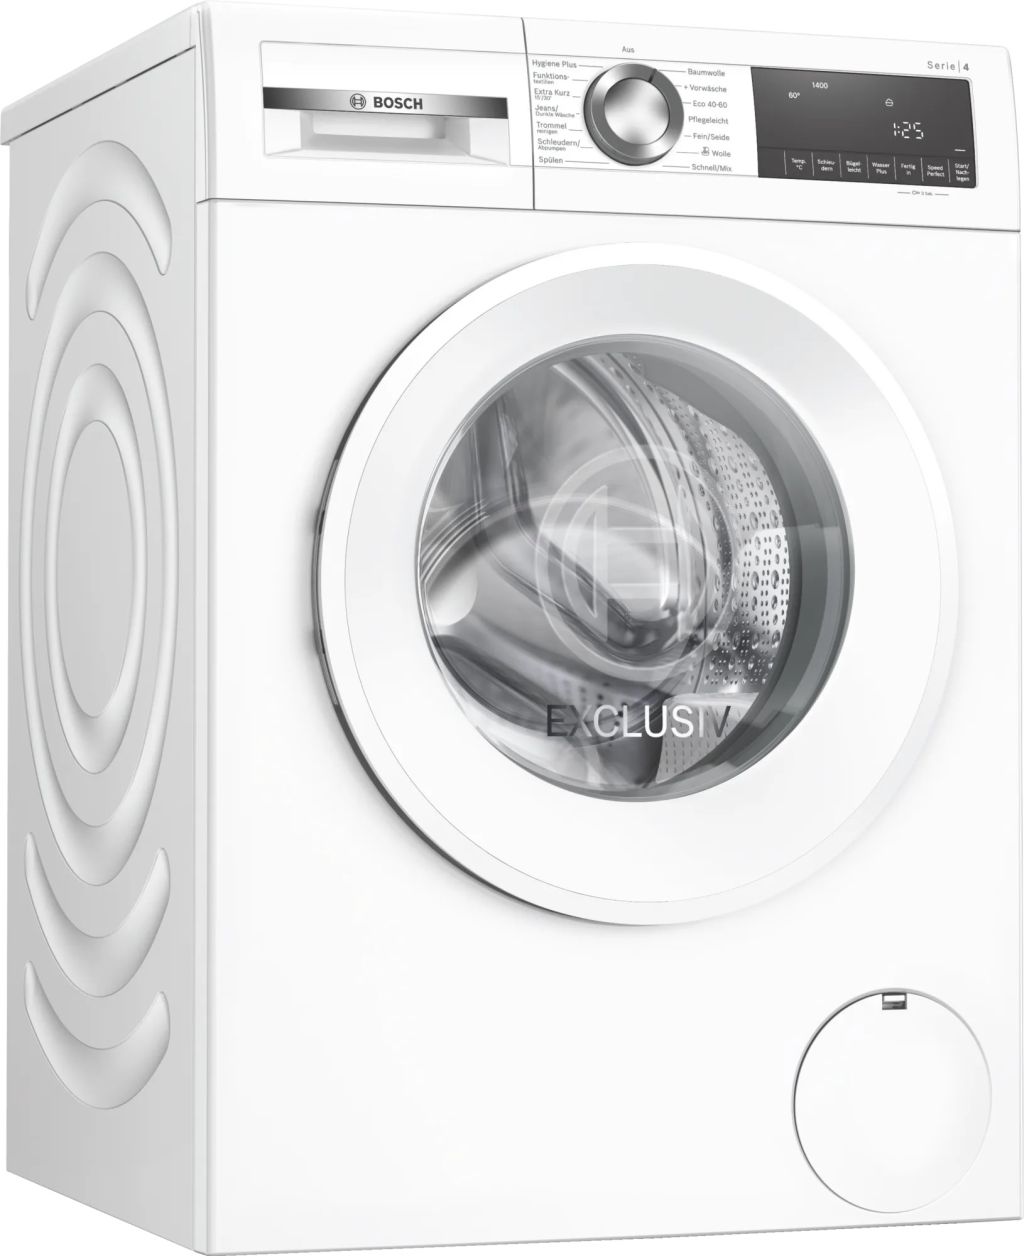 Spuelemax EXCLUSIV Ihre WGG04408A | A – Alles U/min spuelemax.de | Waschmaschine für Bosch 1400 9kg Küche